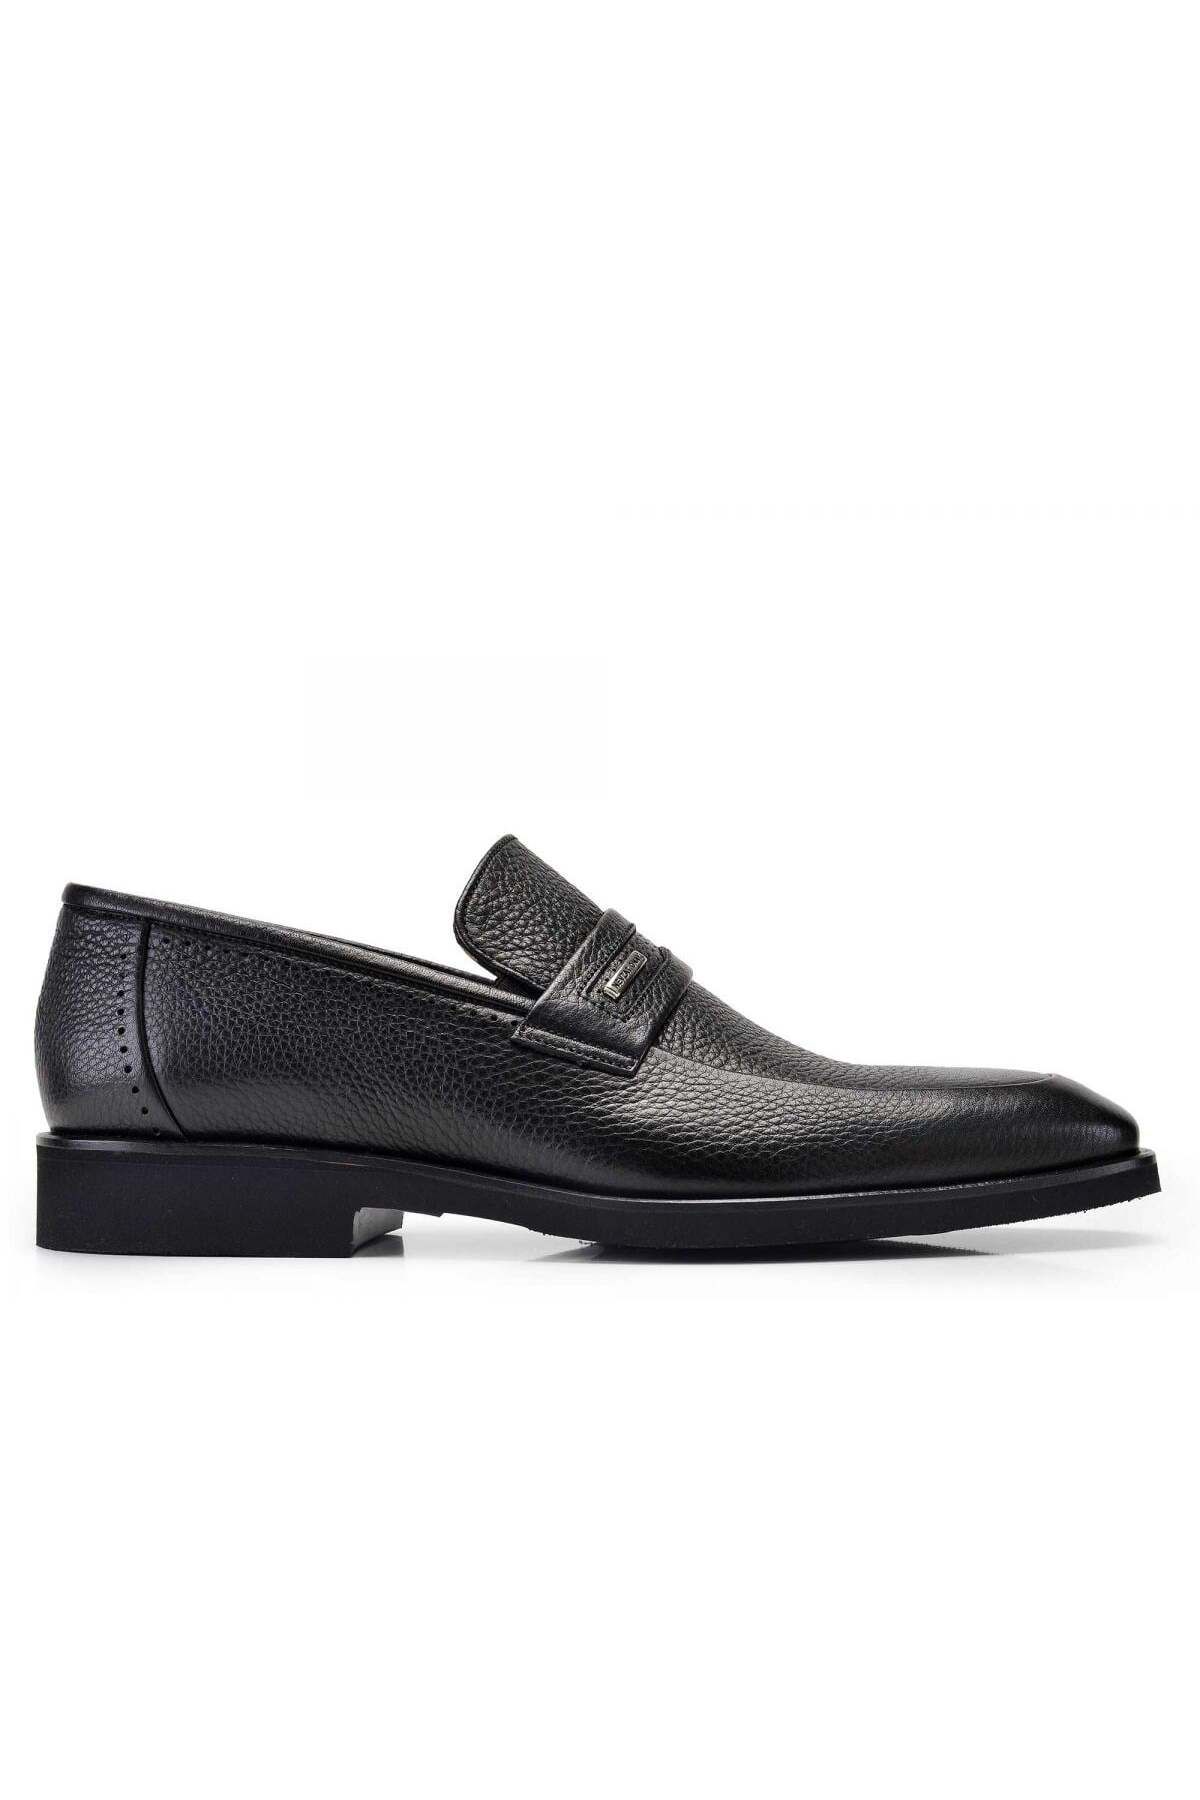 Nevzat Onay Hakiki Deri Siyah Günlük Loafer Erkek Ayakkabı -10923-